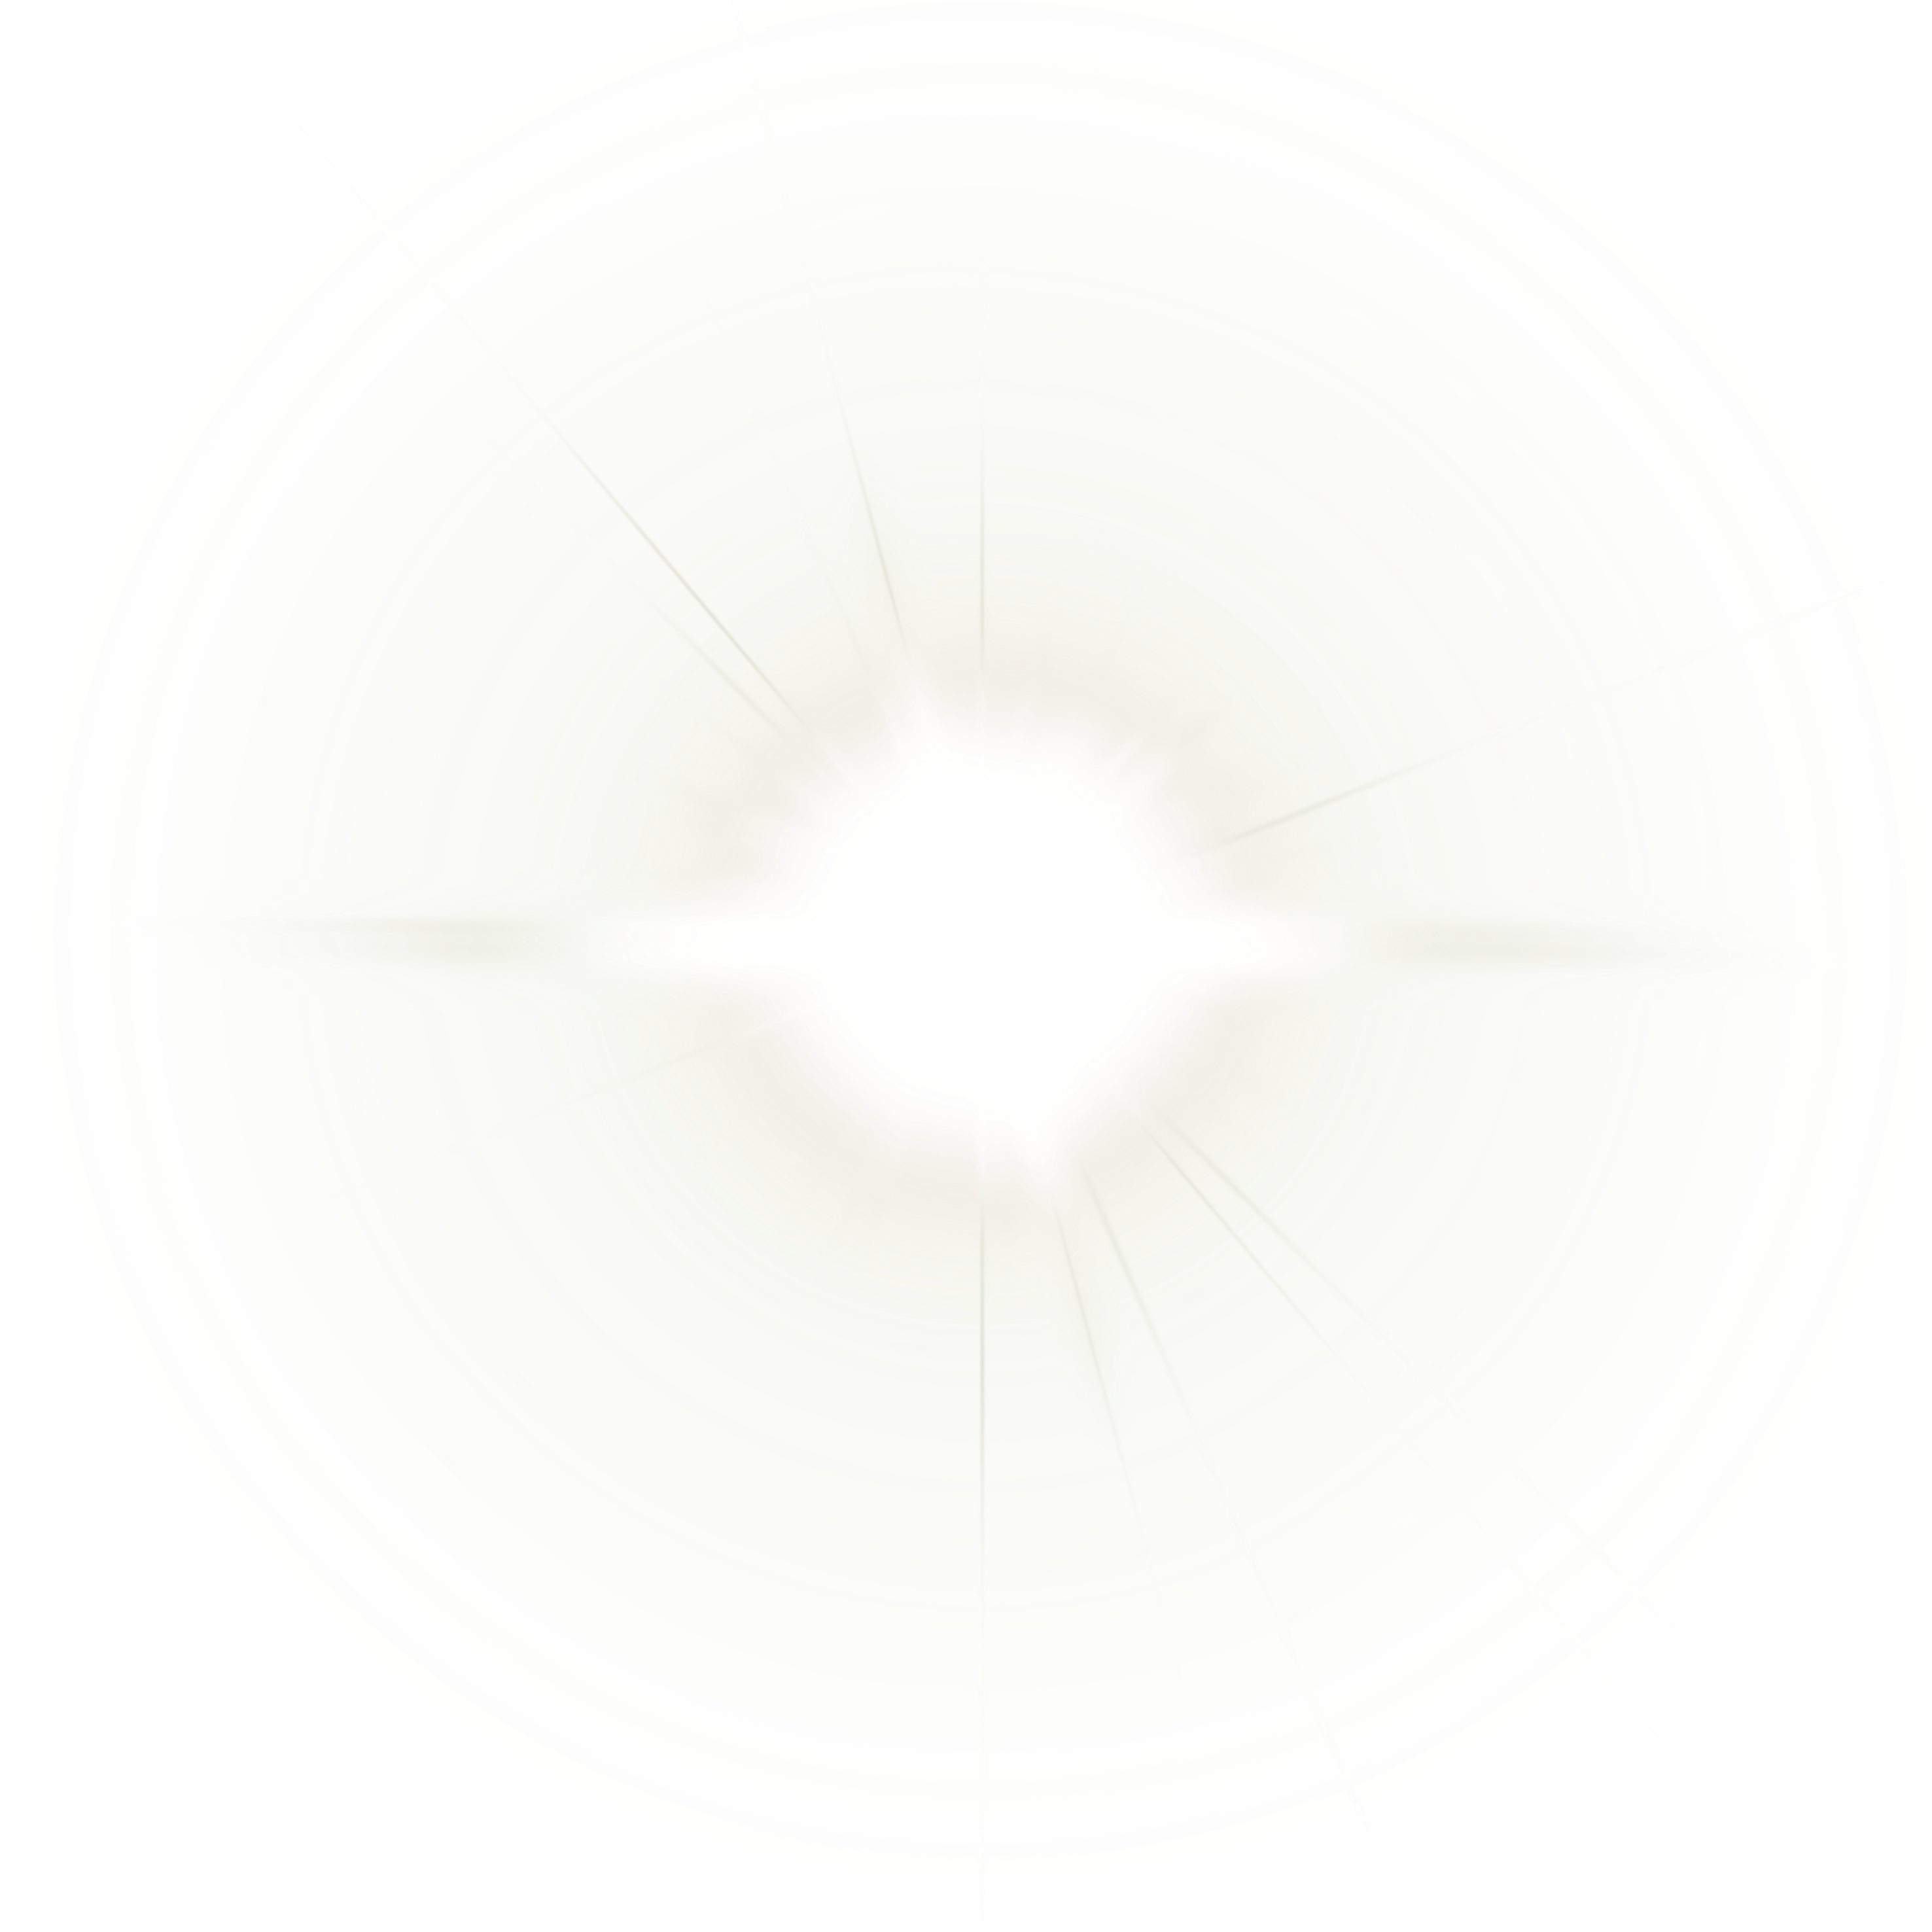 Regeringsverordening Plotselinge afdaling Visser Round White Light Lens Flare Hd Download, Round Light, Light Effects,  Circle - 28107 - TransparentPNG